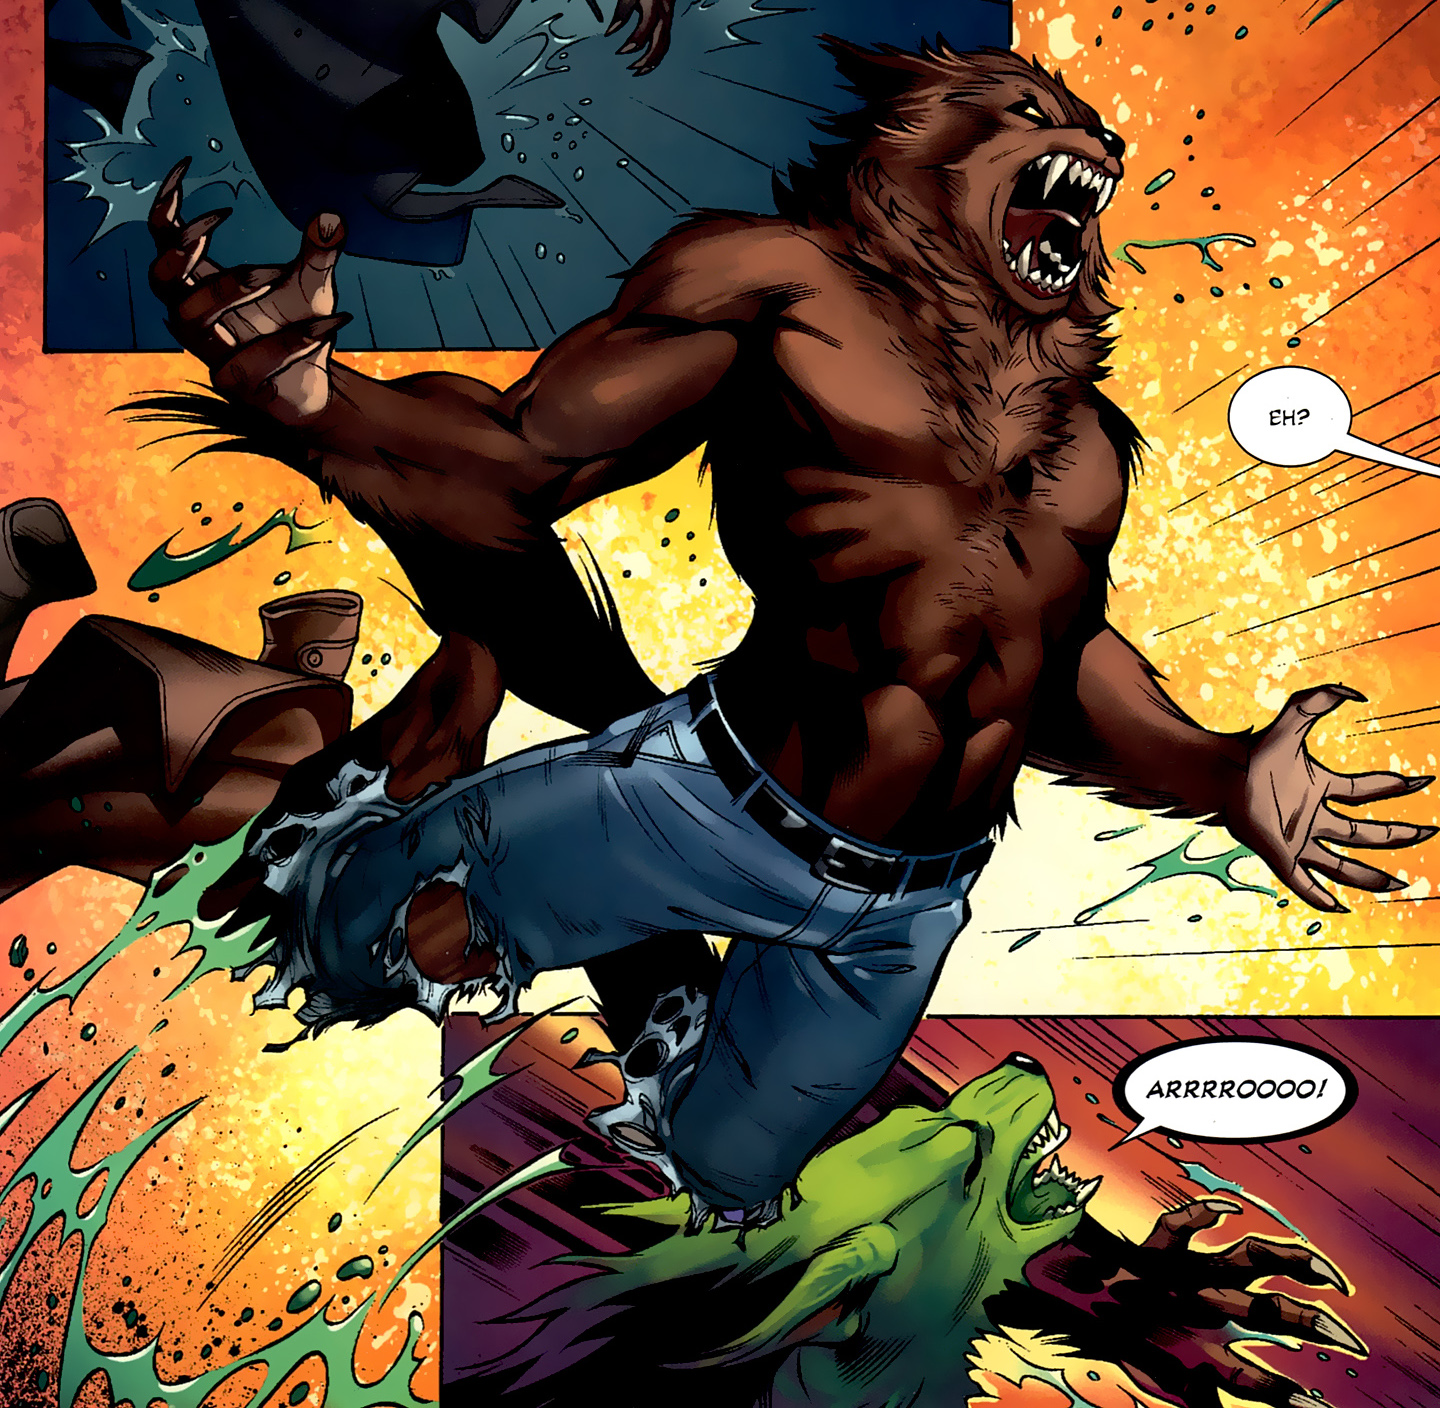 Werewolf By Night #23